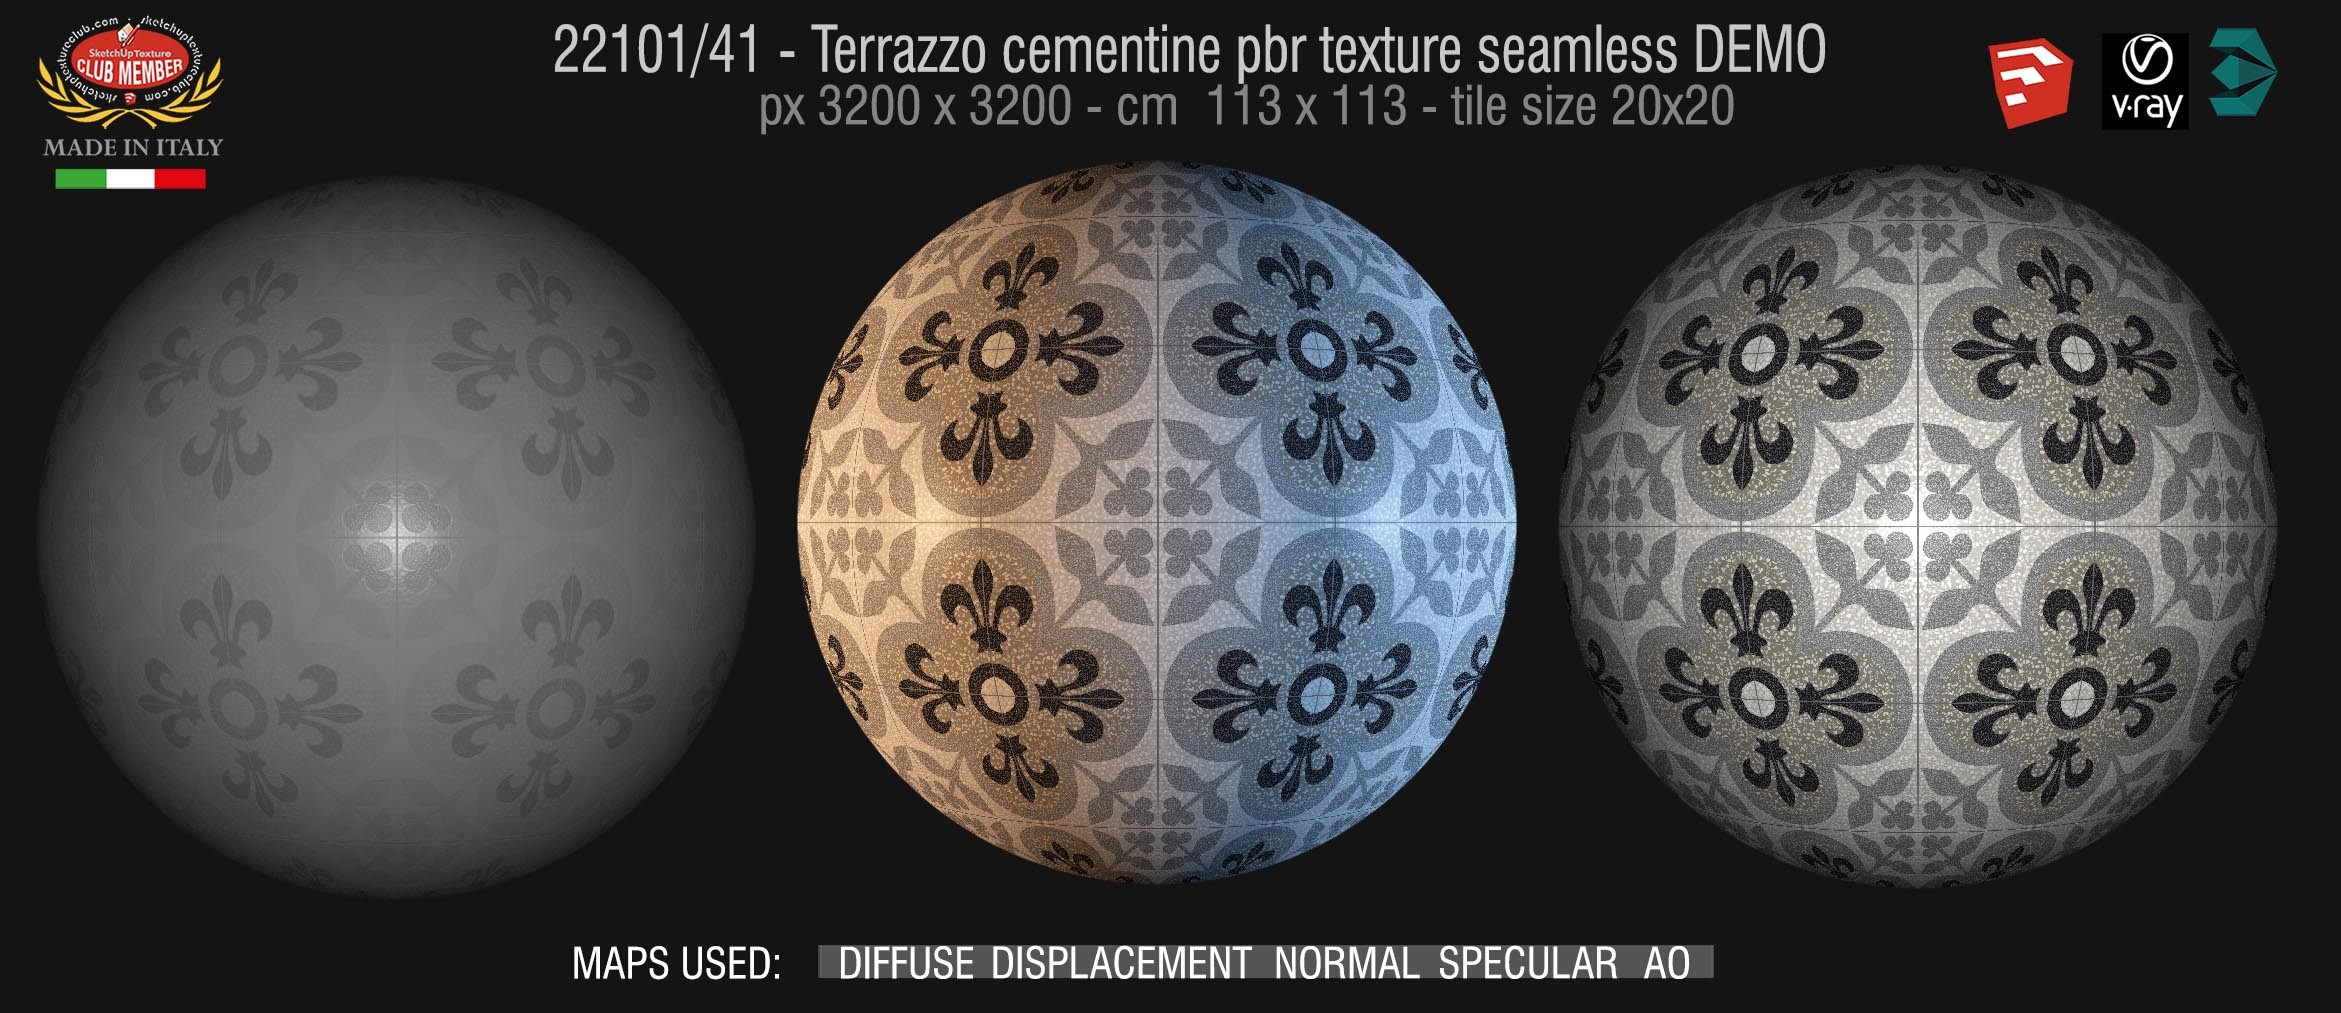 22101/41 terrazzo floor cementine style pbr texture seamless DEMO /  D_Segni Scaglie 20x20 size by Marazzi